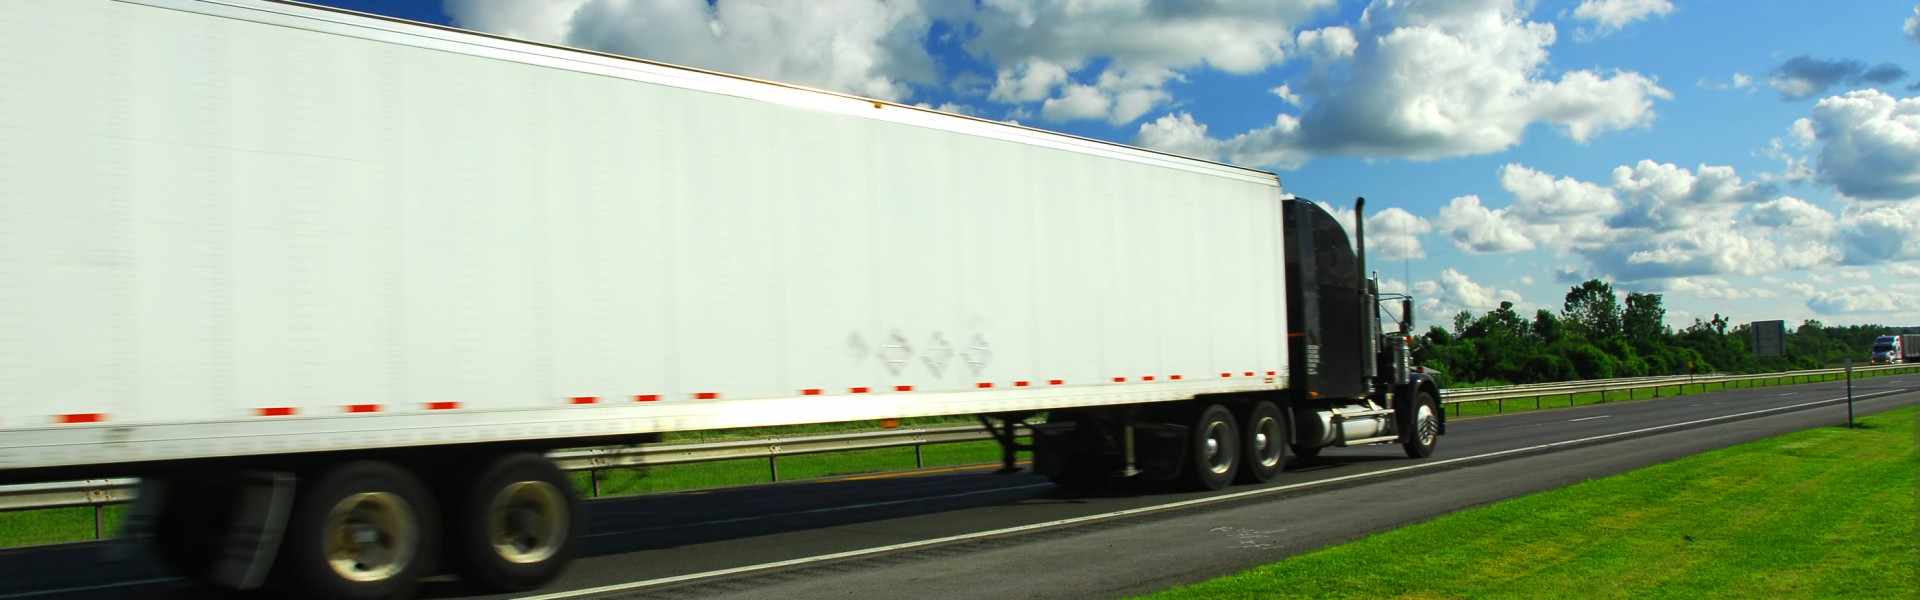 bigstock-Fast-Moving-Truck-664261-1920x600